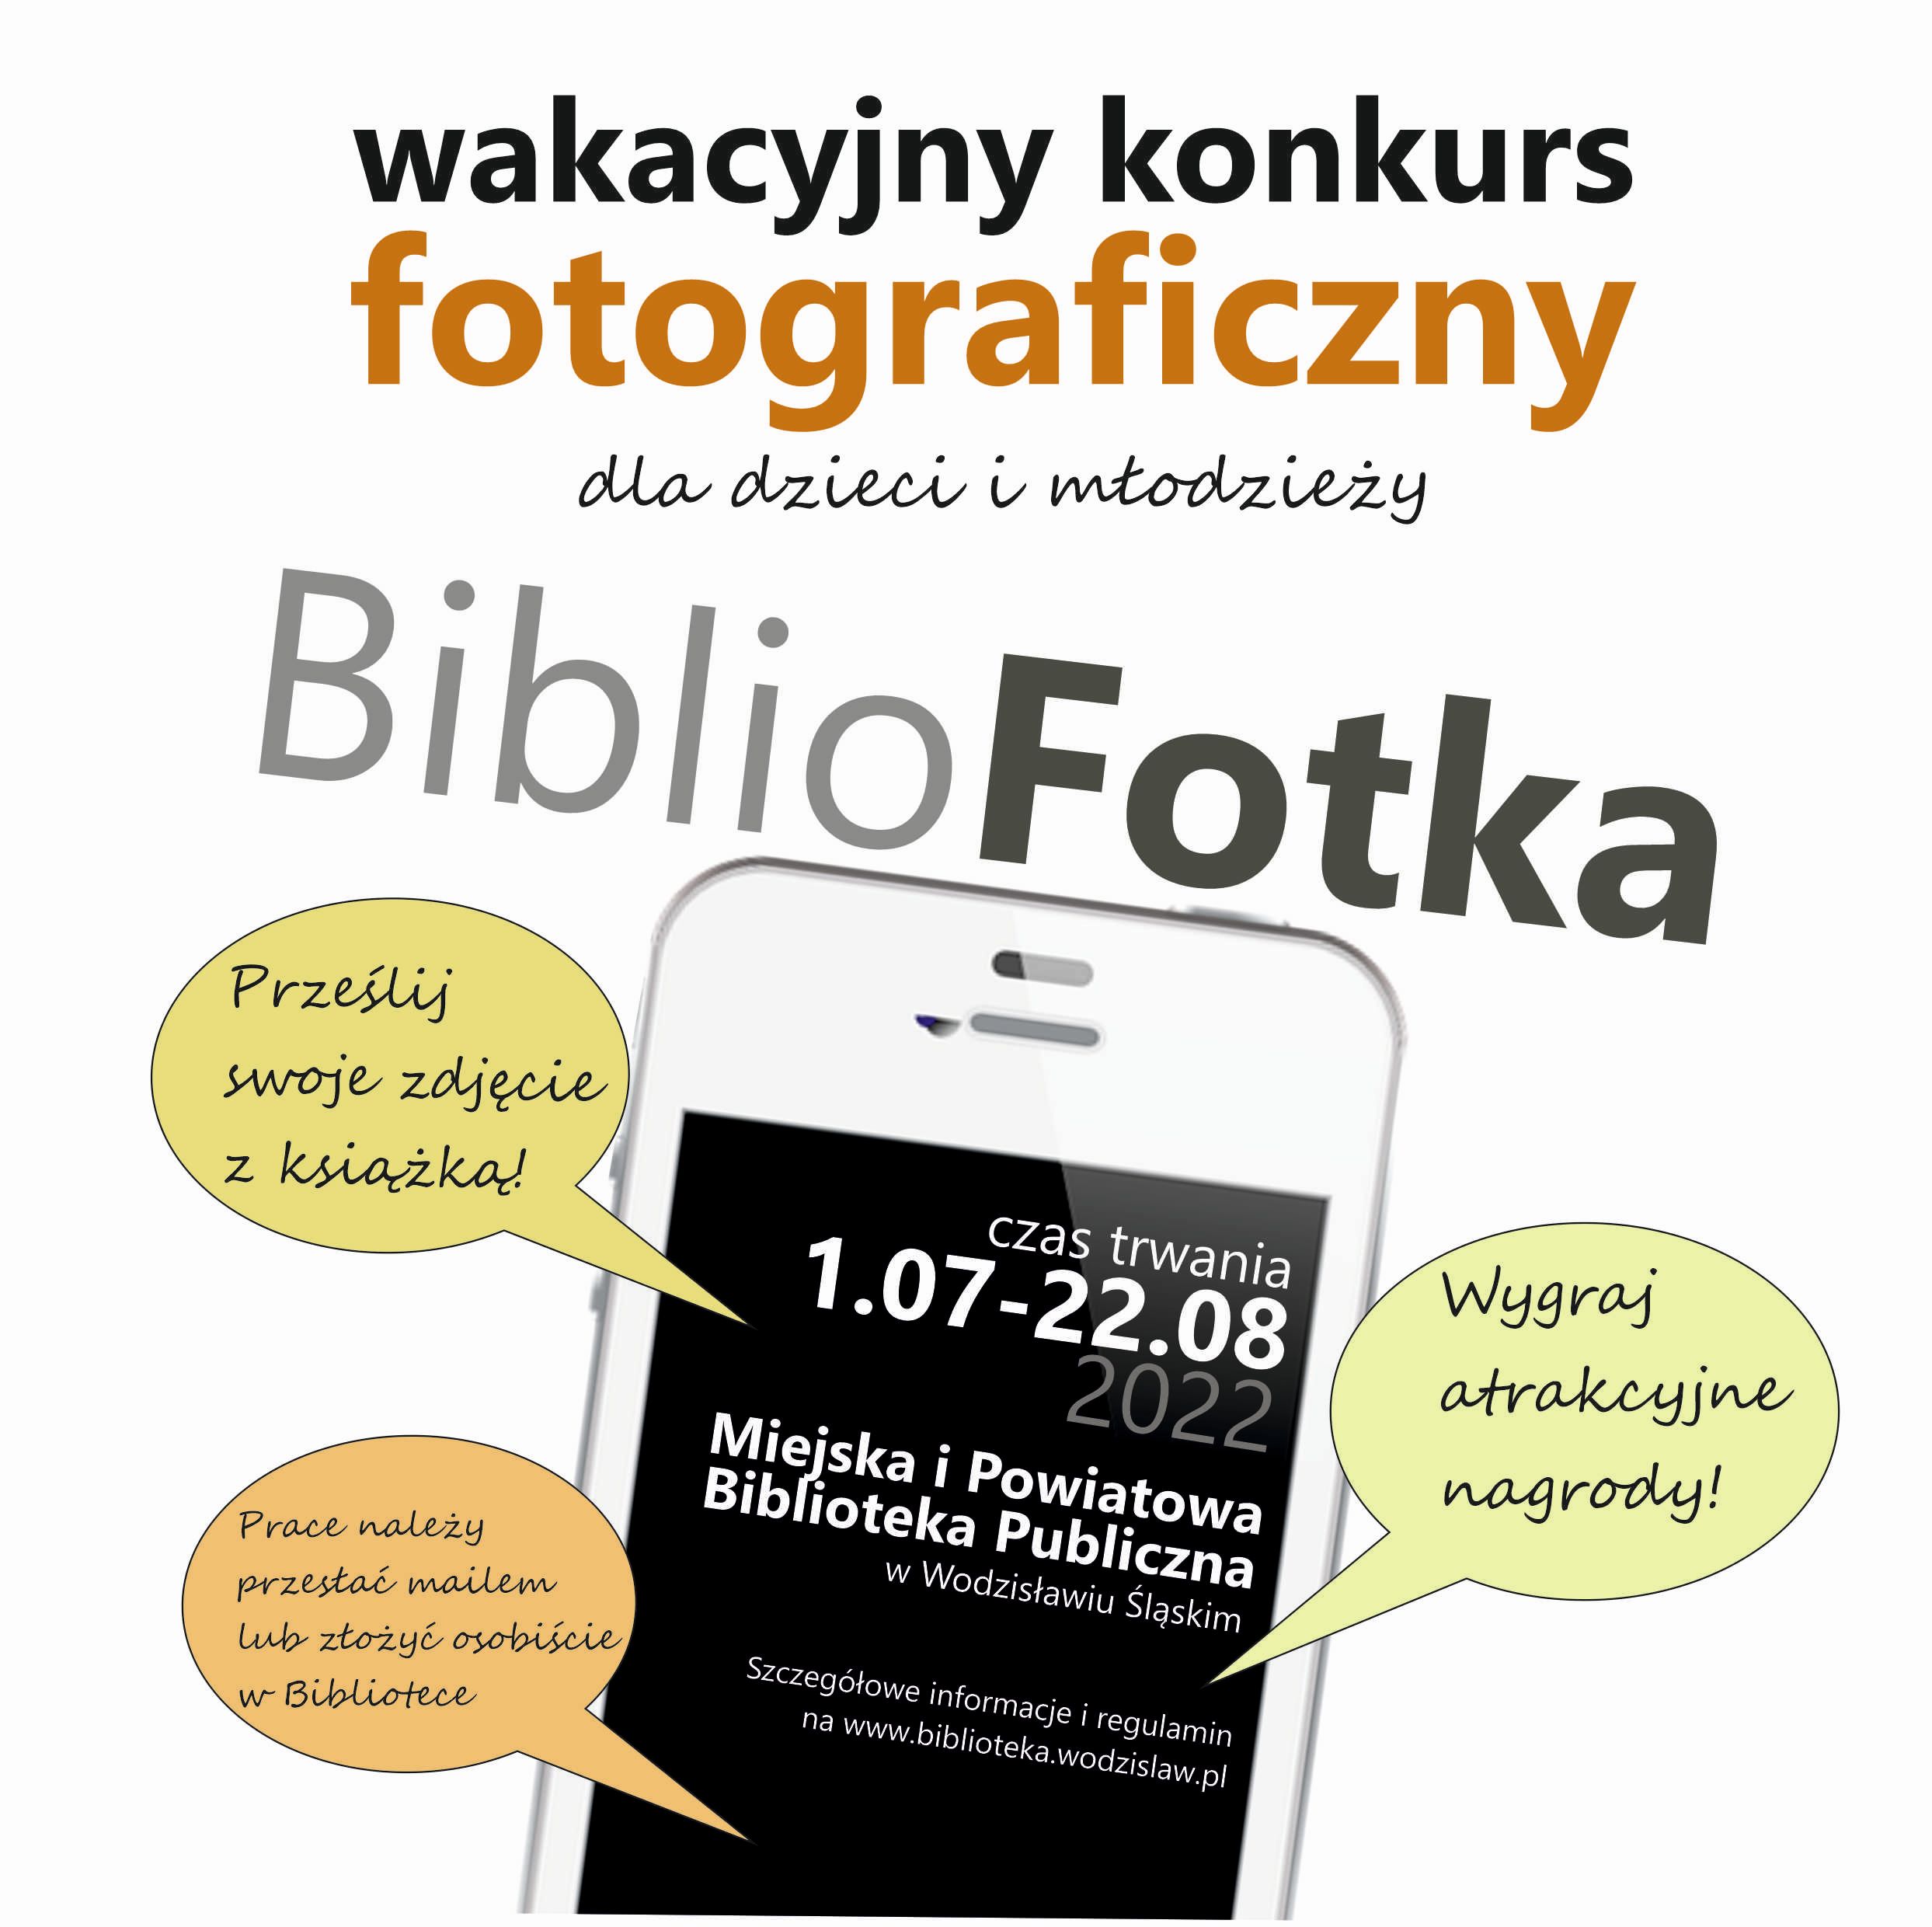 BIBLIOFOTKA – WAKACYJNY KONKURS FOTOGRAFICZNY DLA DZIECI I MŁODZIEŻY – Od 1 Lipca Do 22 Sierpnia 2022